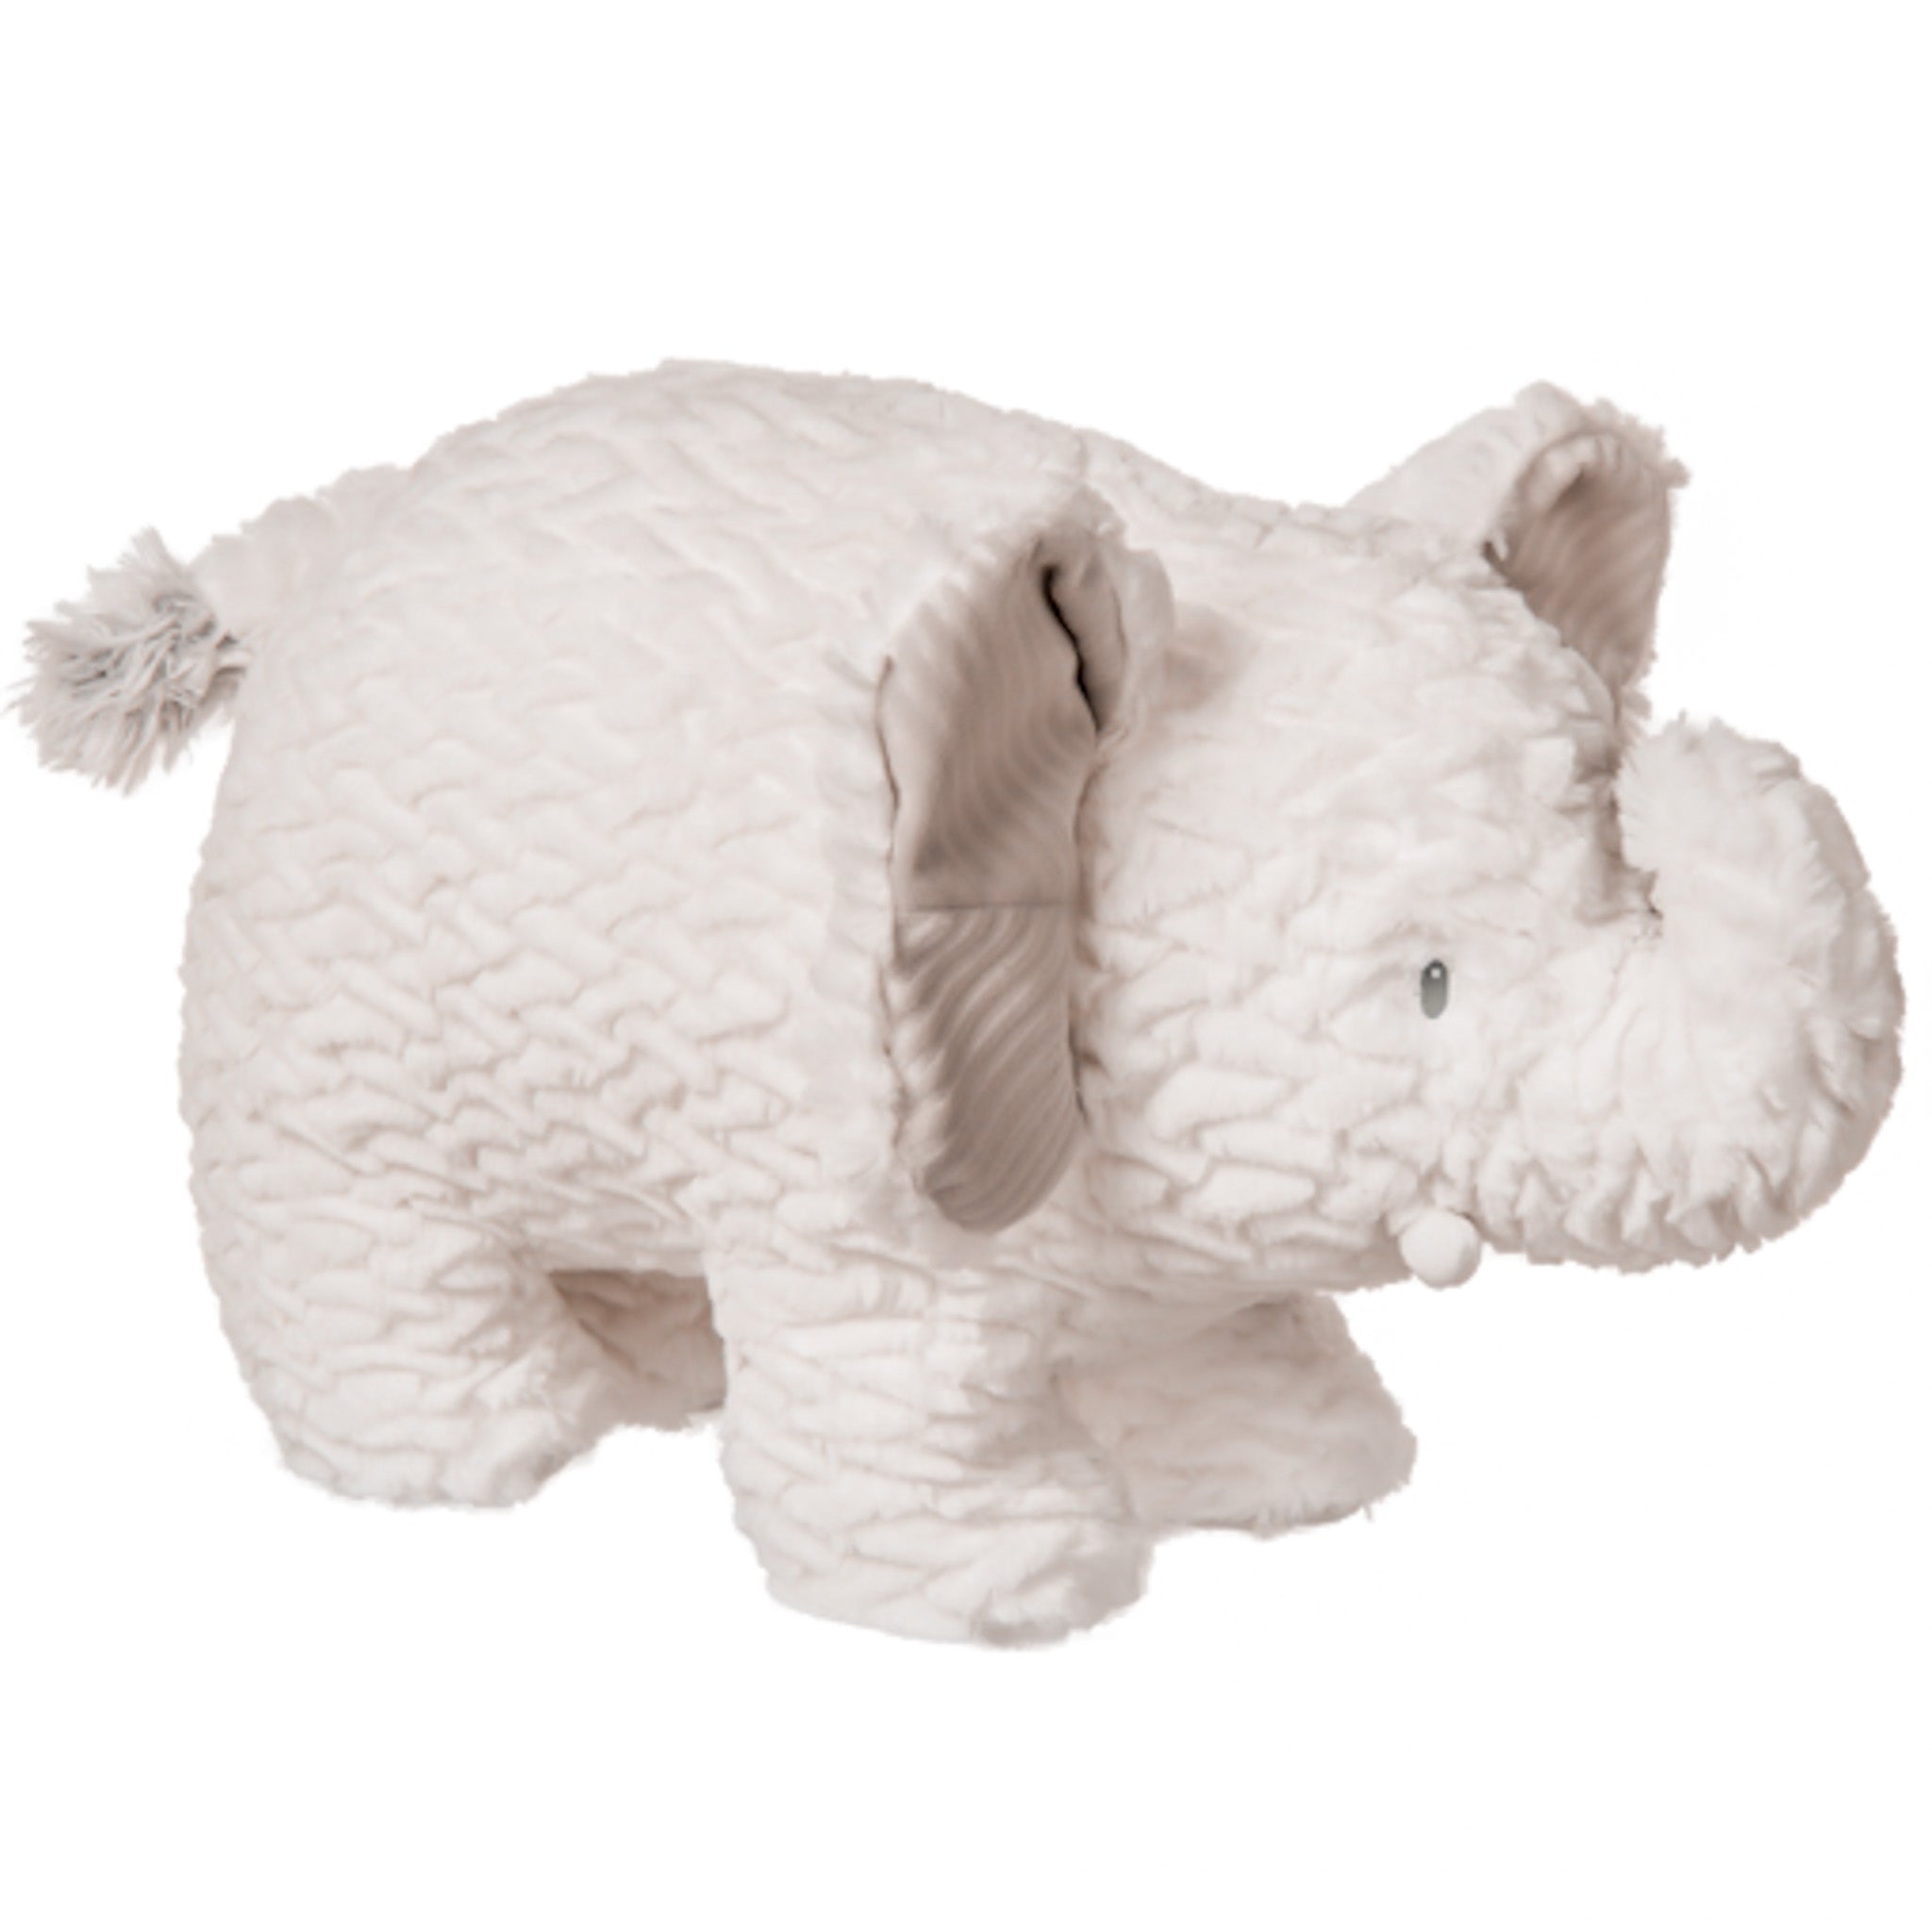 Afrique Elephant Soft Toy- 15"